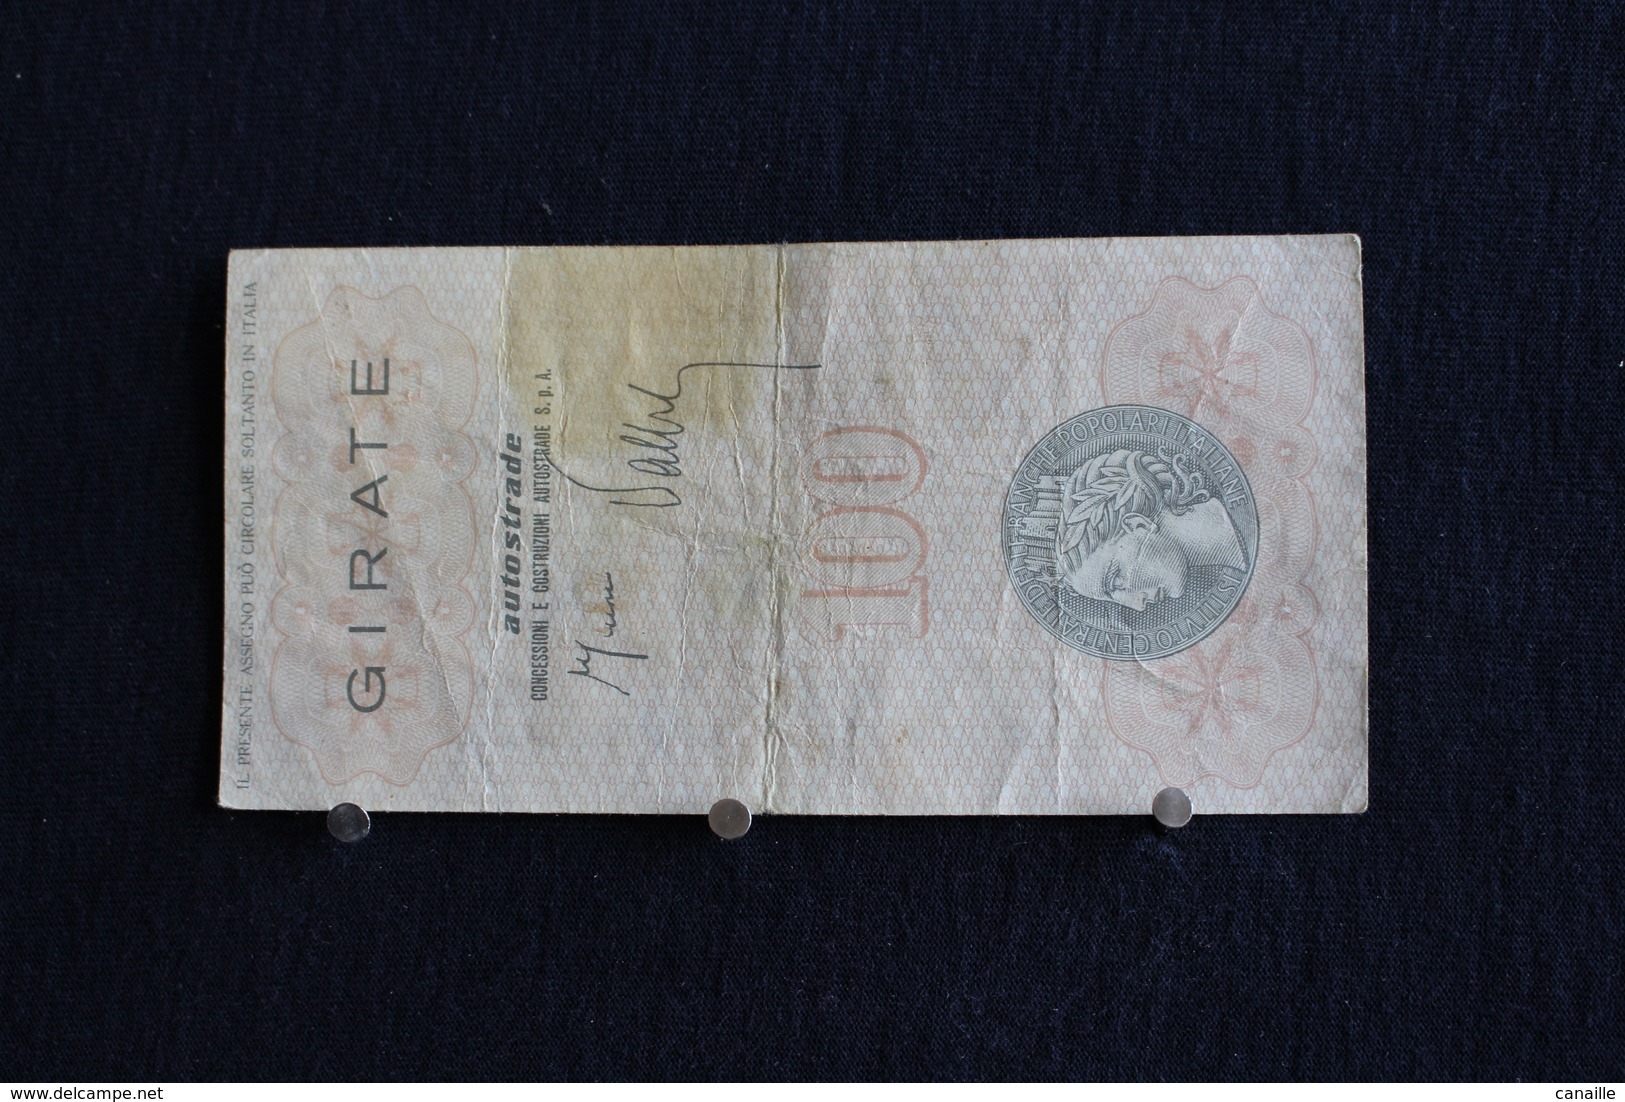 4 / Italie / 1946:Royaume / Biglietti-L'Istituto Centrale Delle Banche Popolari Italiane,17.7.77 - 100 Lire - Cento Lire - 100 Liras